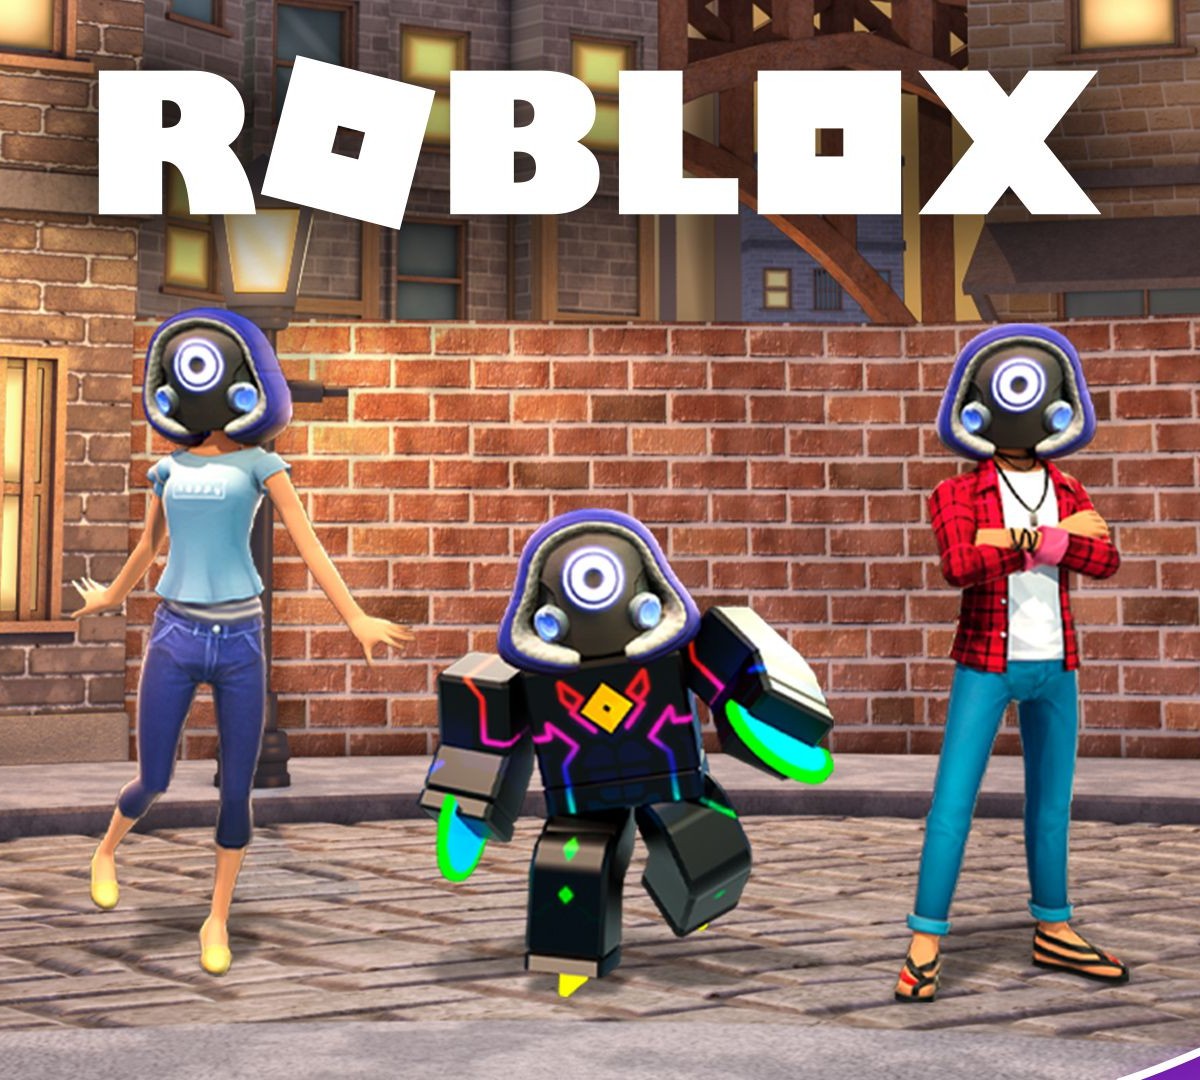 Razer lança edição limitada de periféricos oficiais do game Roblox 